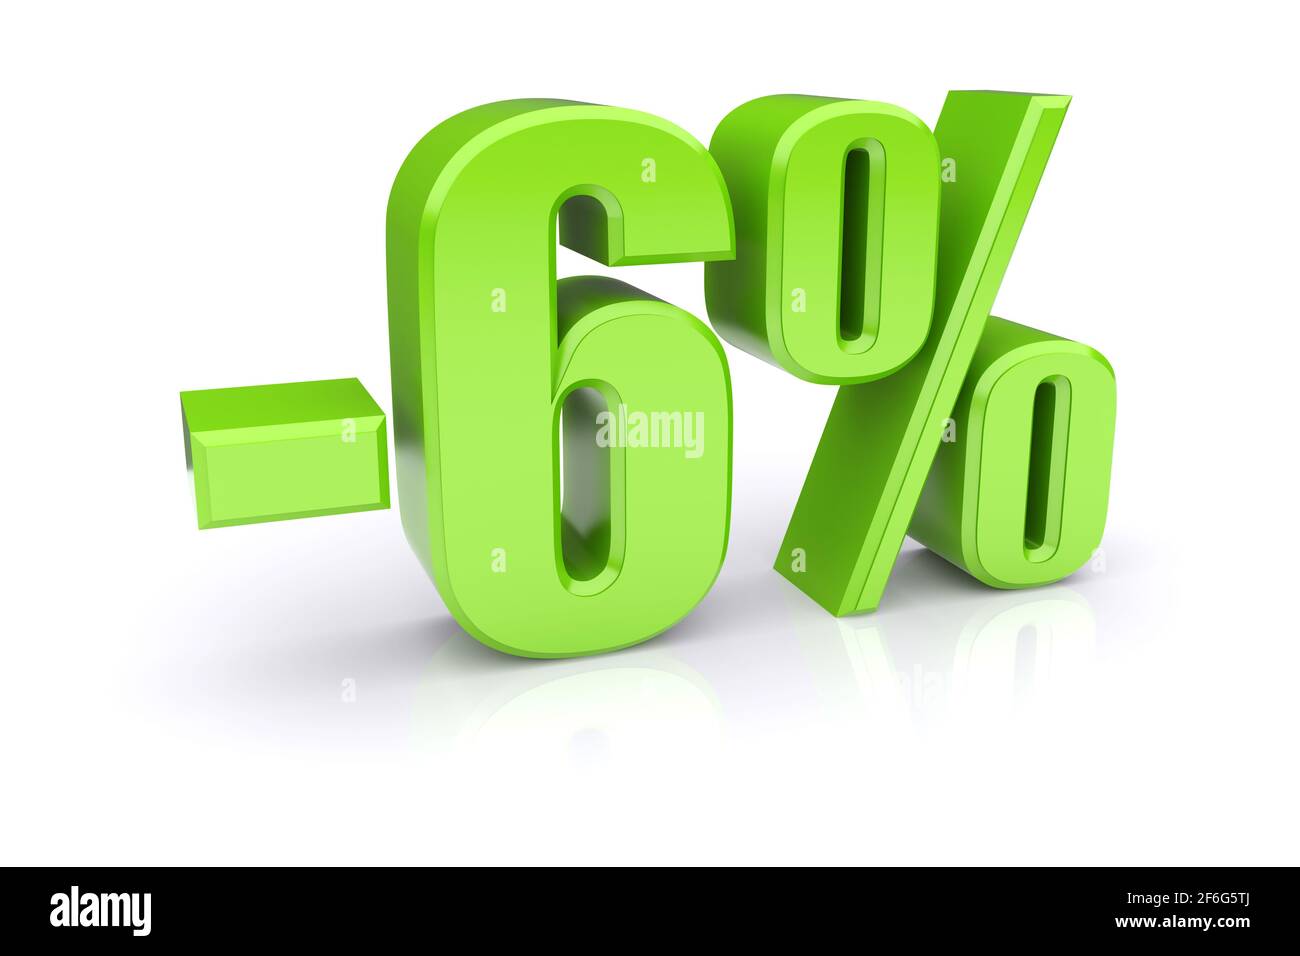 Icona verde del tasso percentuale del 6% su sfondo bianco. immagine 3d rappresentata Foto Stock